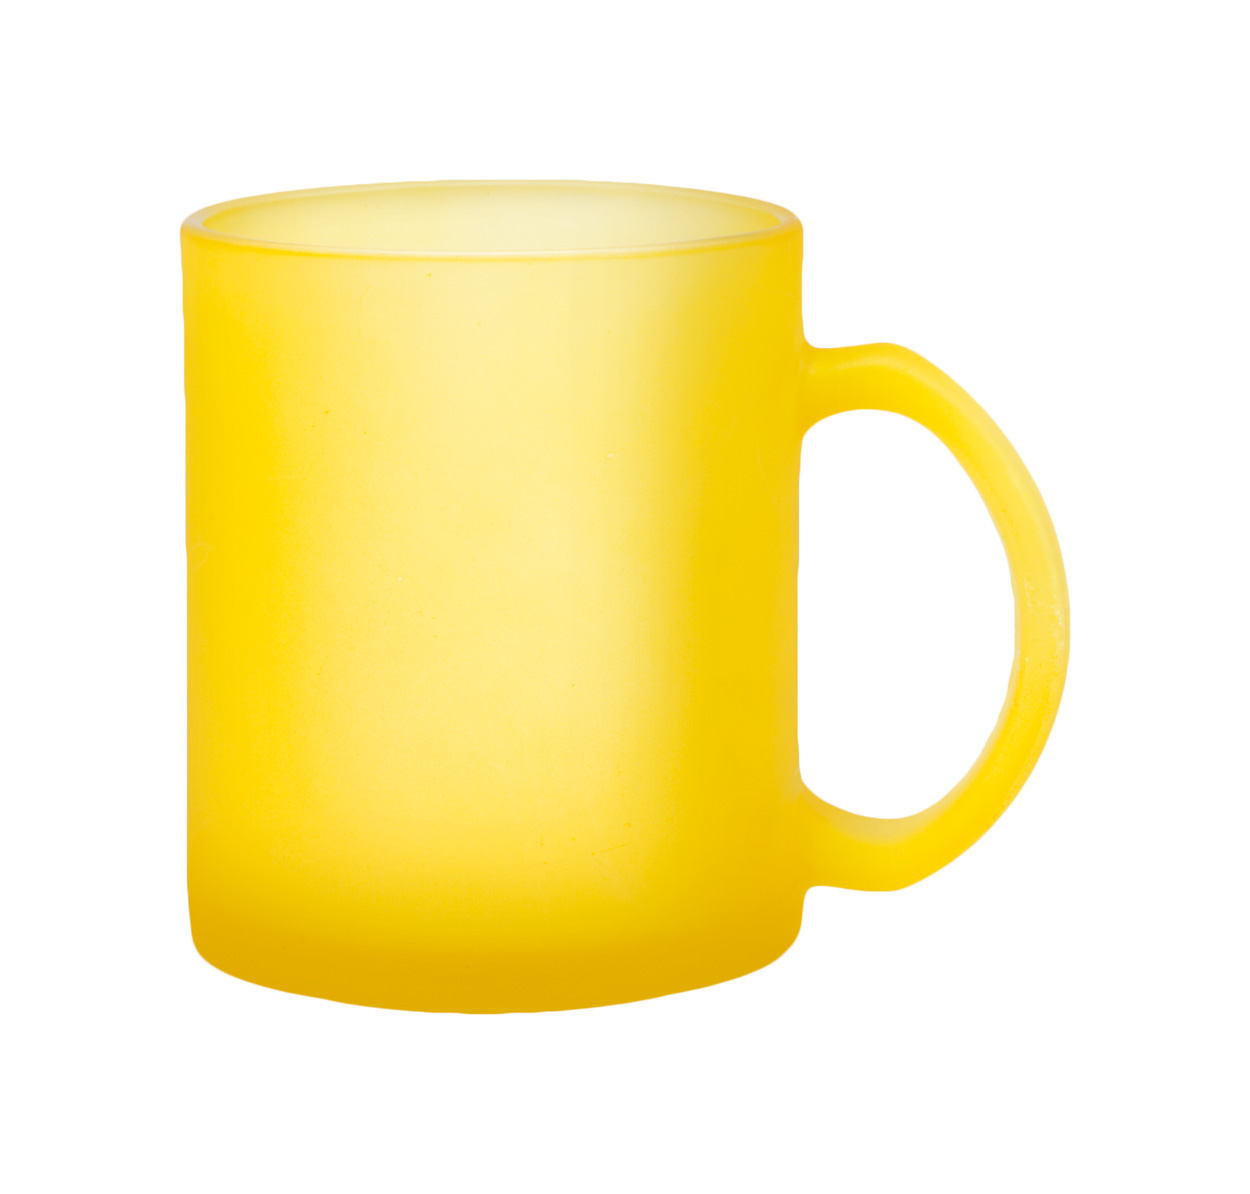 Wazi mug - yellow